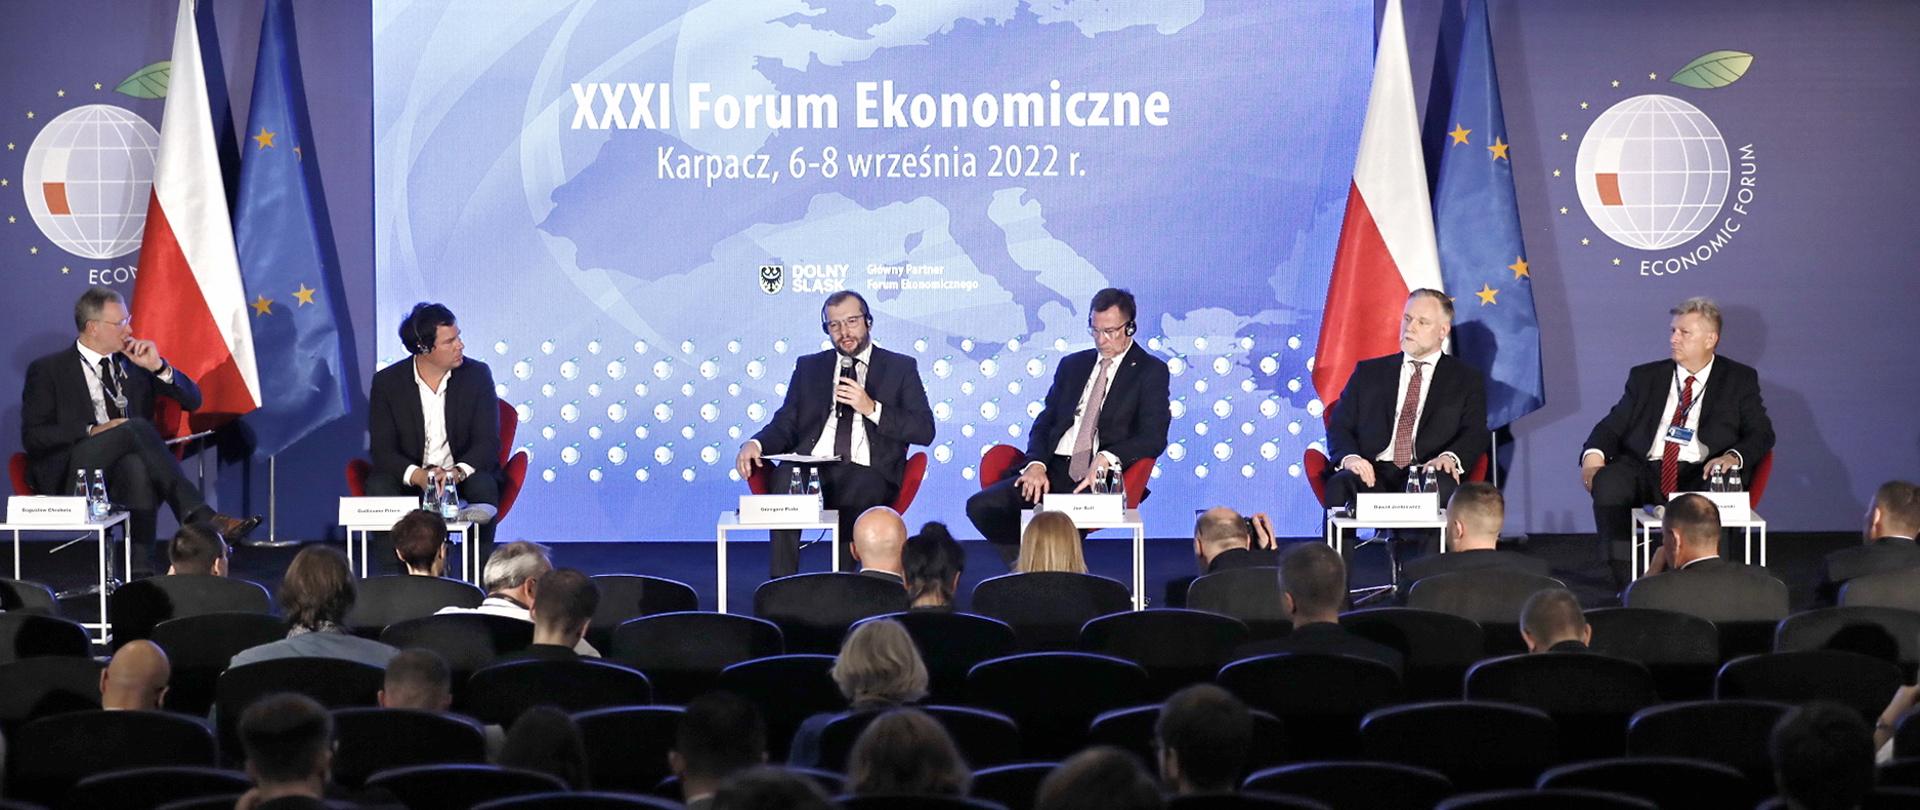  Minister Grzegorz Puda siedzi w fotelu środku na scenie, trzyma mikrofon w lewej ręce i mówi do niego. Obok niego siedzi pięć innych osób.